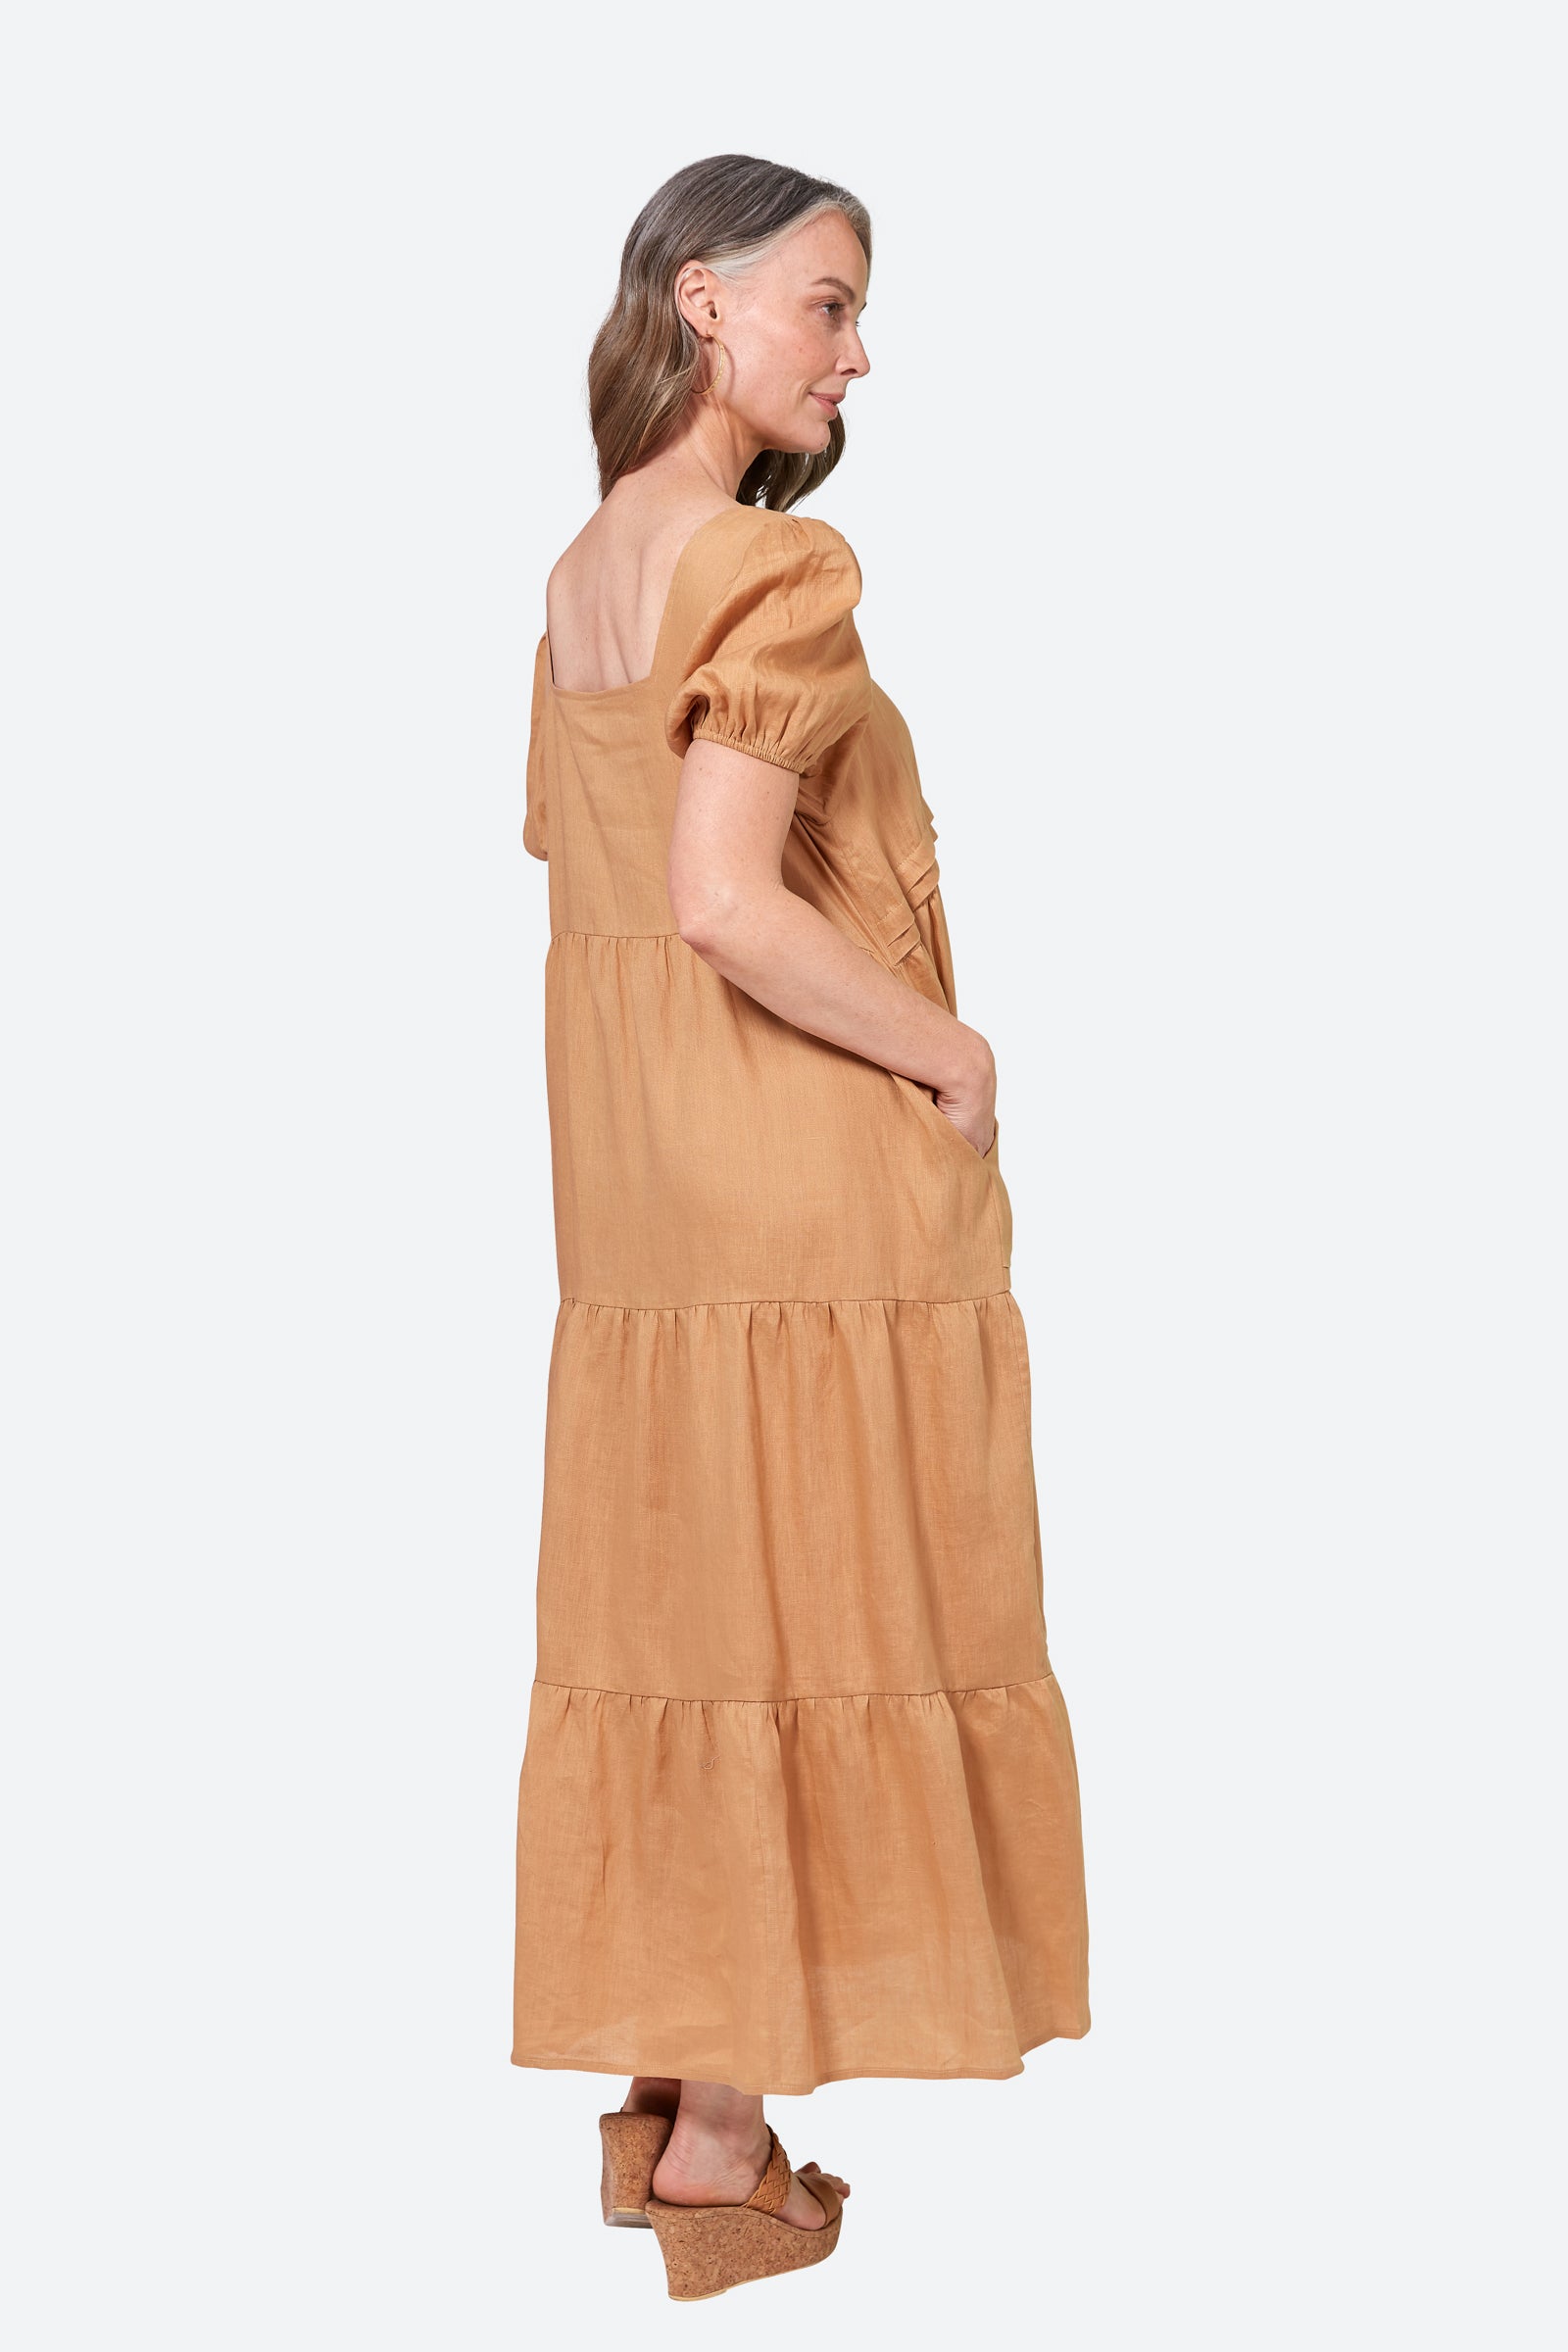 La Vie Pintuck Maxi - Caramel - eb&ive Clothing - Dress Maxi Linen